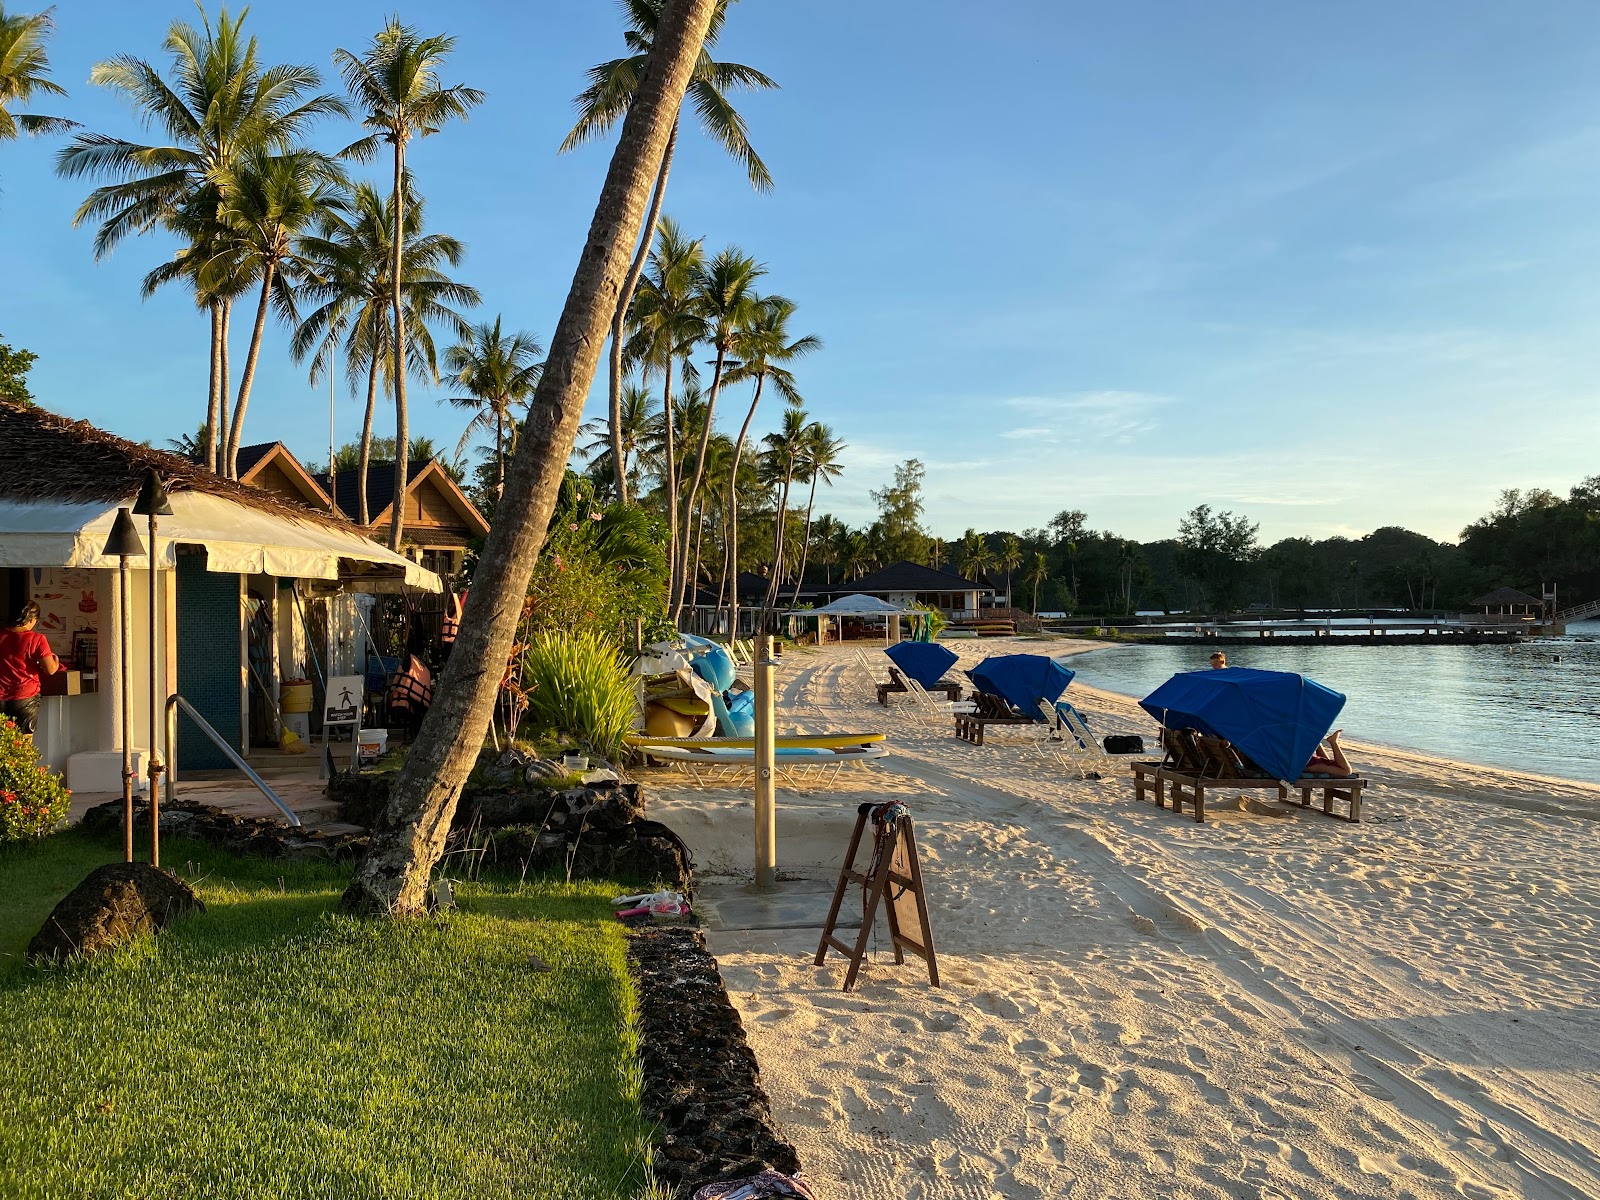 Fotografie cu Palau Pacific Resort - locul popular printre cunoscătorii de relaxare